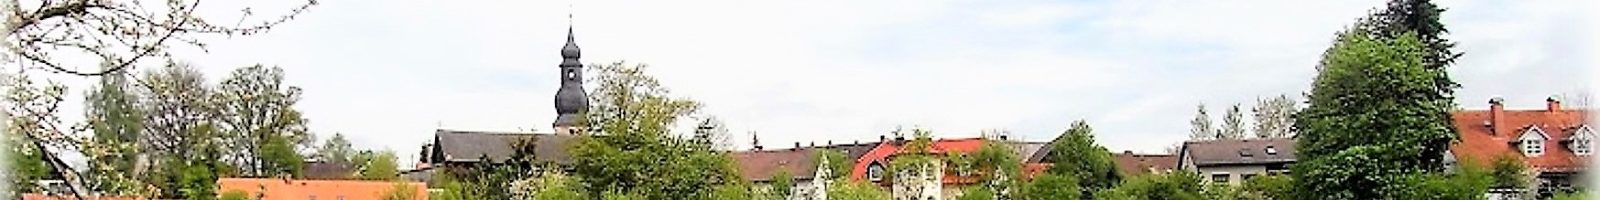 Der Obst- und Gartenbauverein Neunkirchen am Main und Umgebung im Überblick